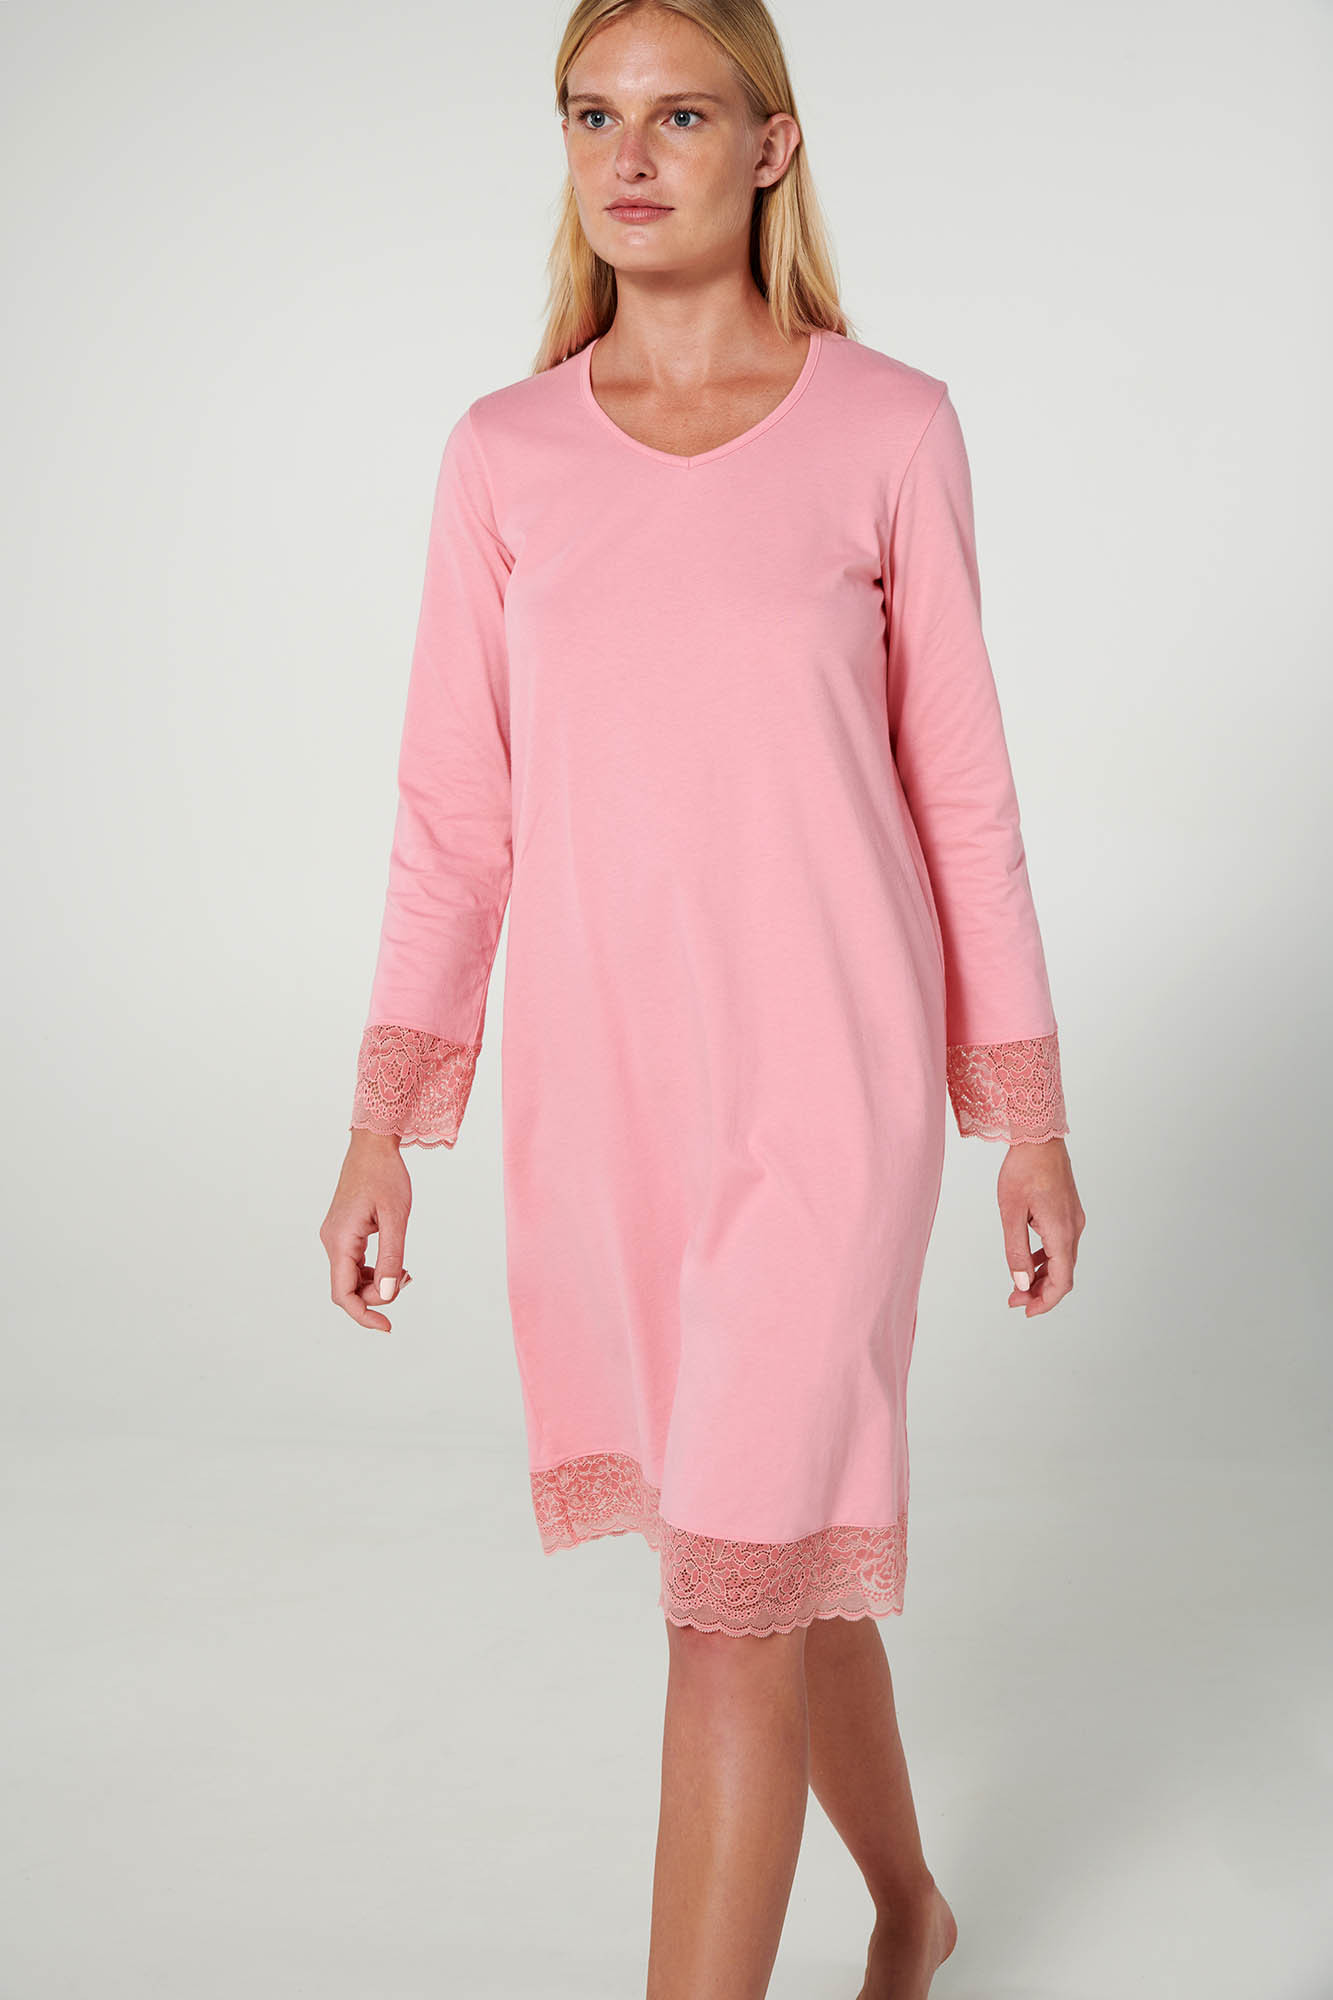 Vamp - Noční košile s krajkou 19907 - Vamp pink blush M